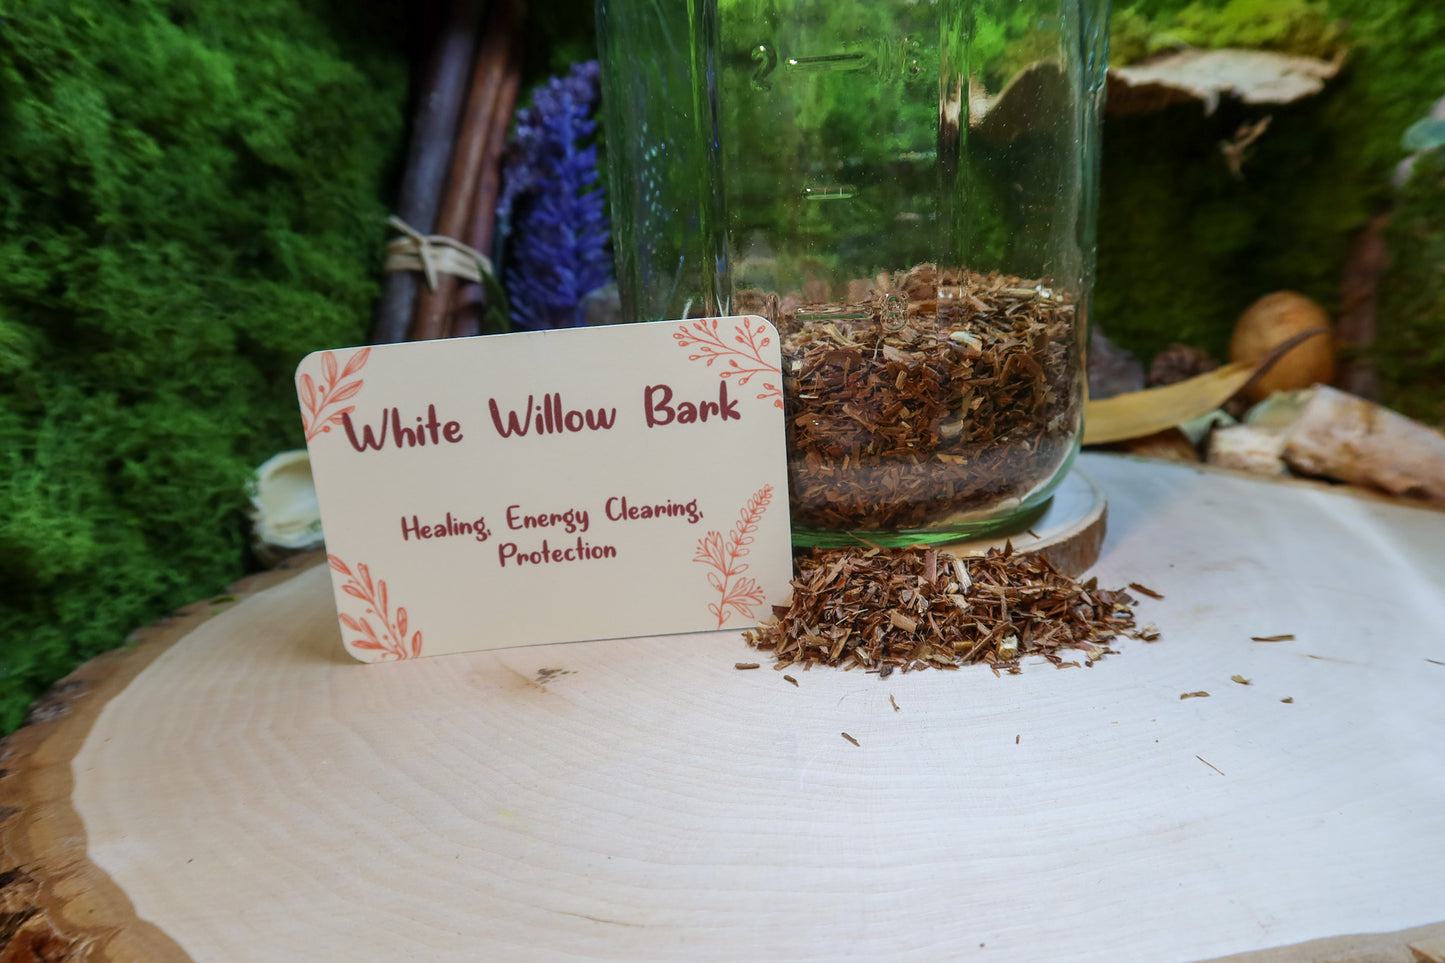 White Willow Bark